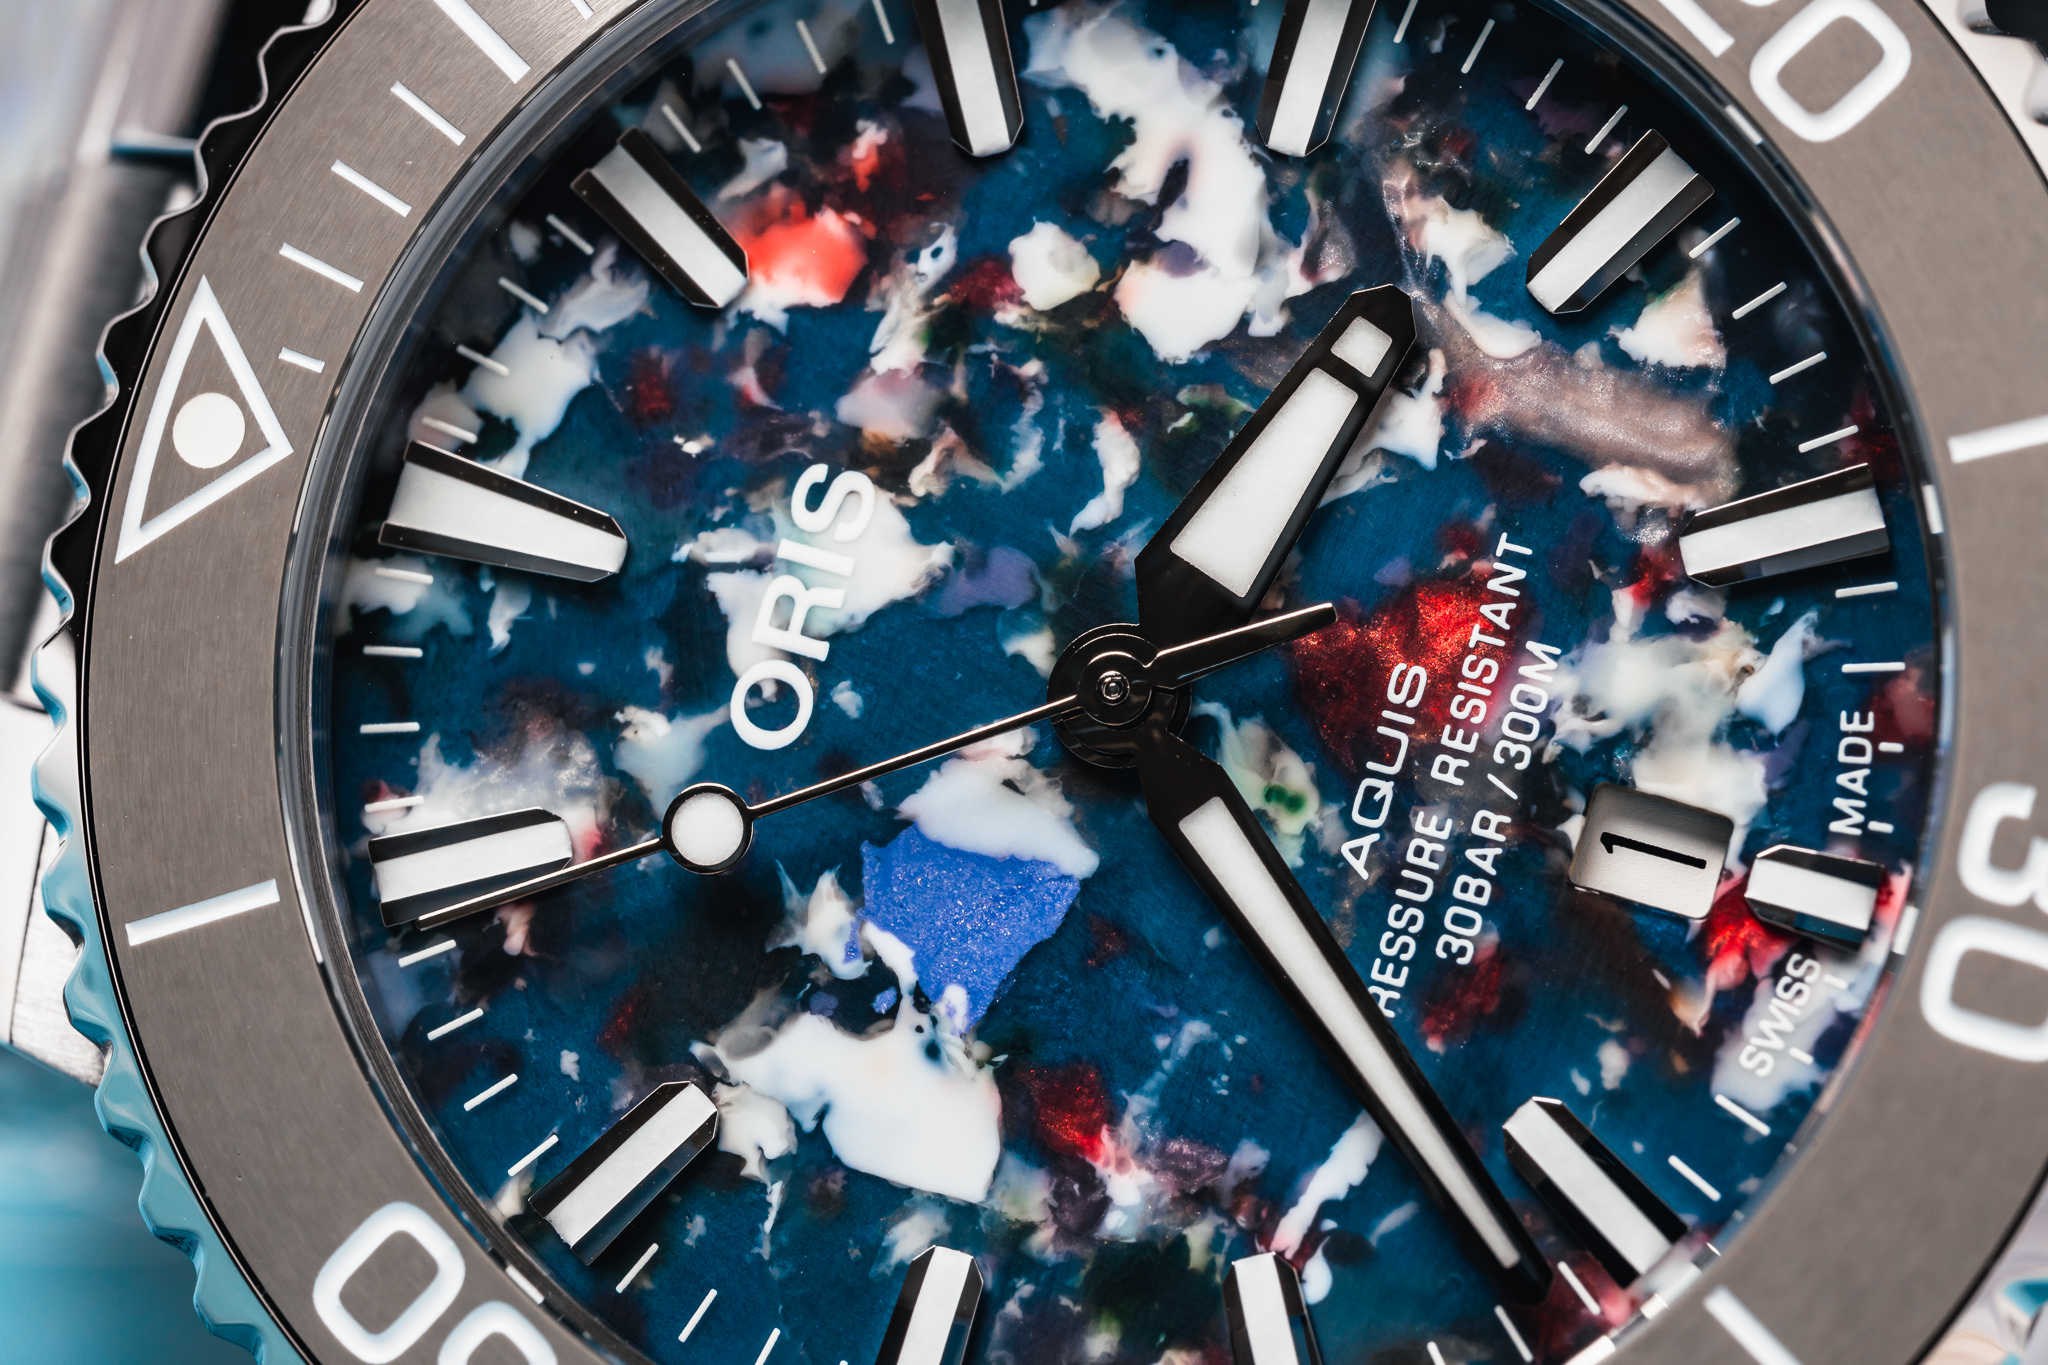 Oris выпускает часы Aquis Date Upcycle с циферблатами из переработанного океанического пластика